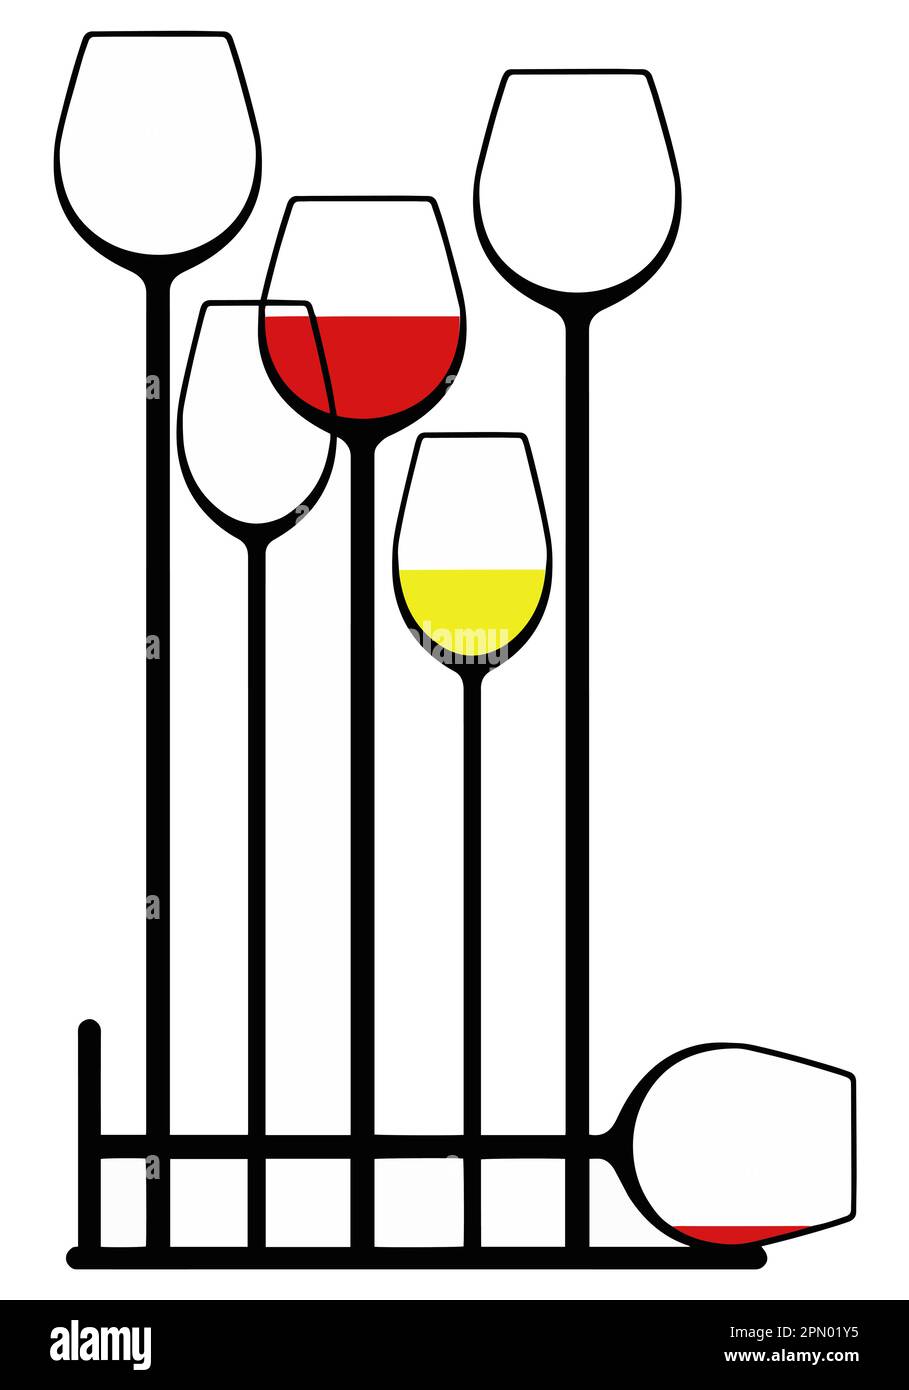 Il disegno grafico è usato per disegnare i vetri alti dello stemware che contengono il vino in un'illustrazione vettoriale. Illustrazione Vettoriale